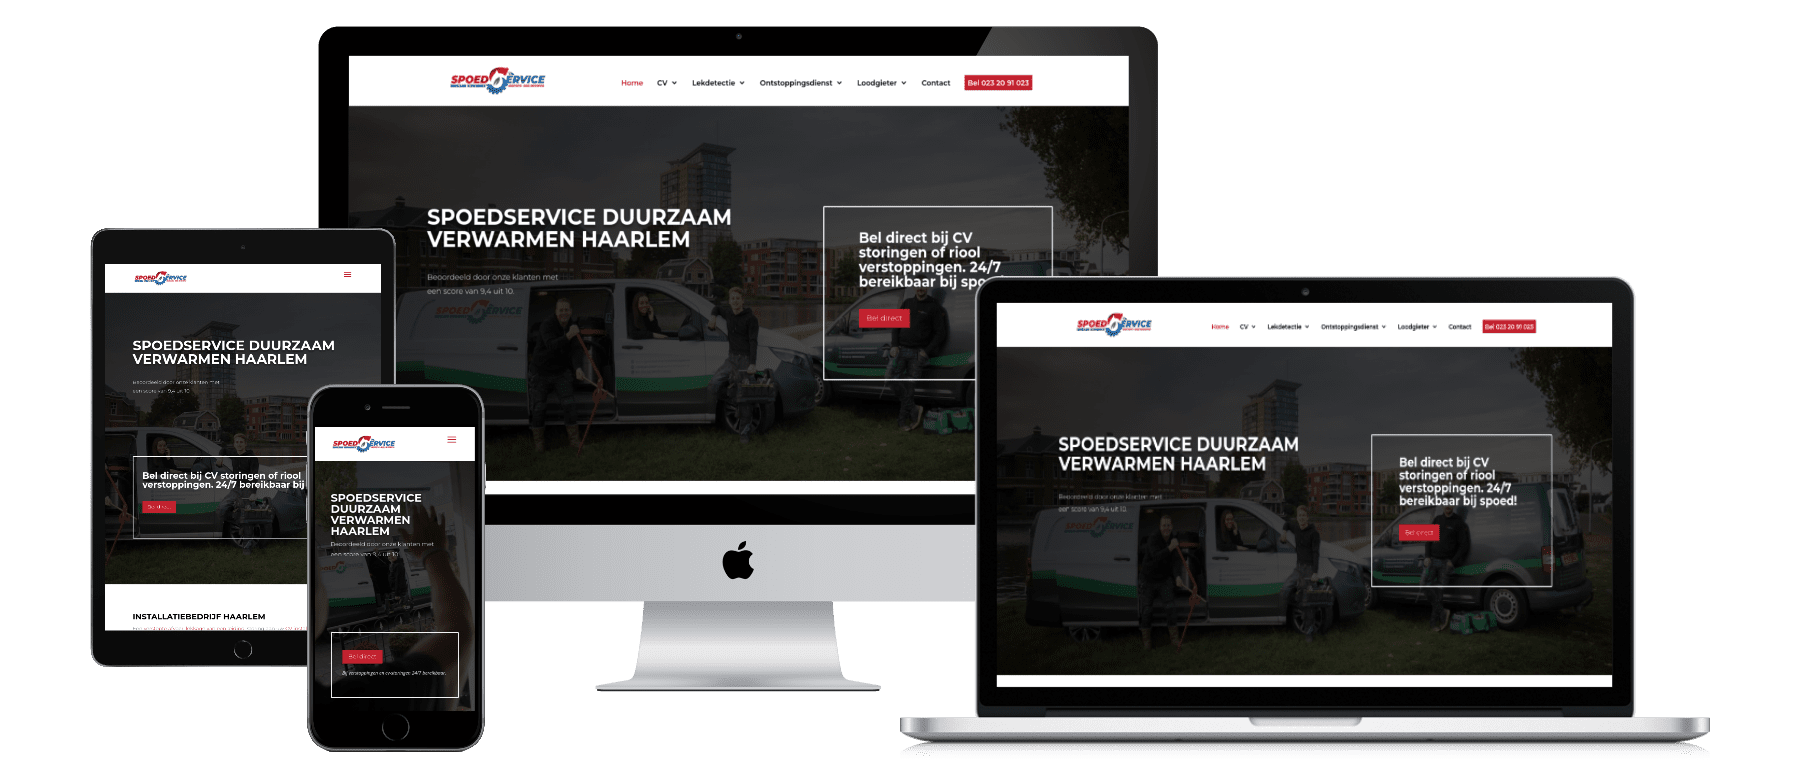 Housing-Online4u website laten maken door DigiVisuall Friesland